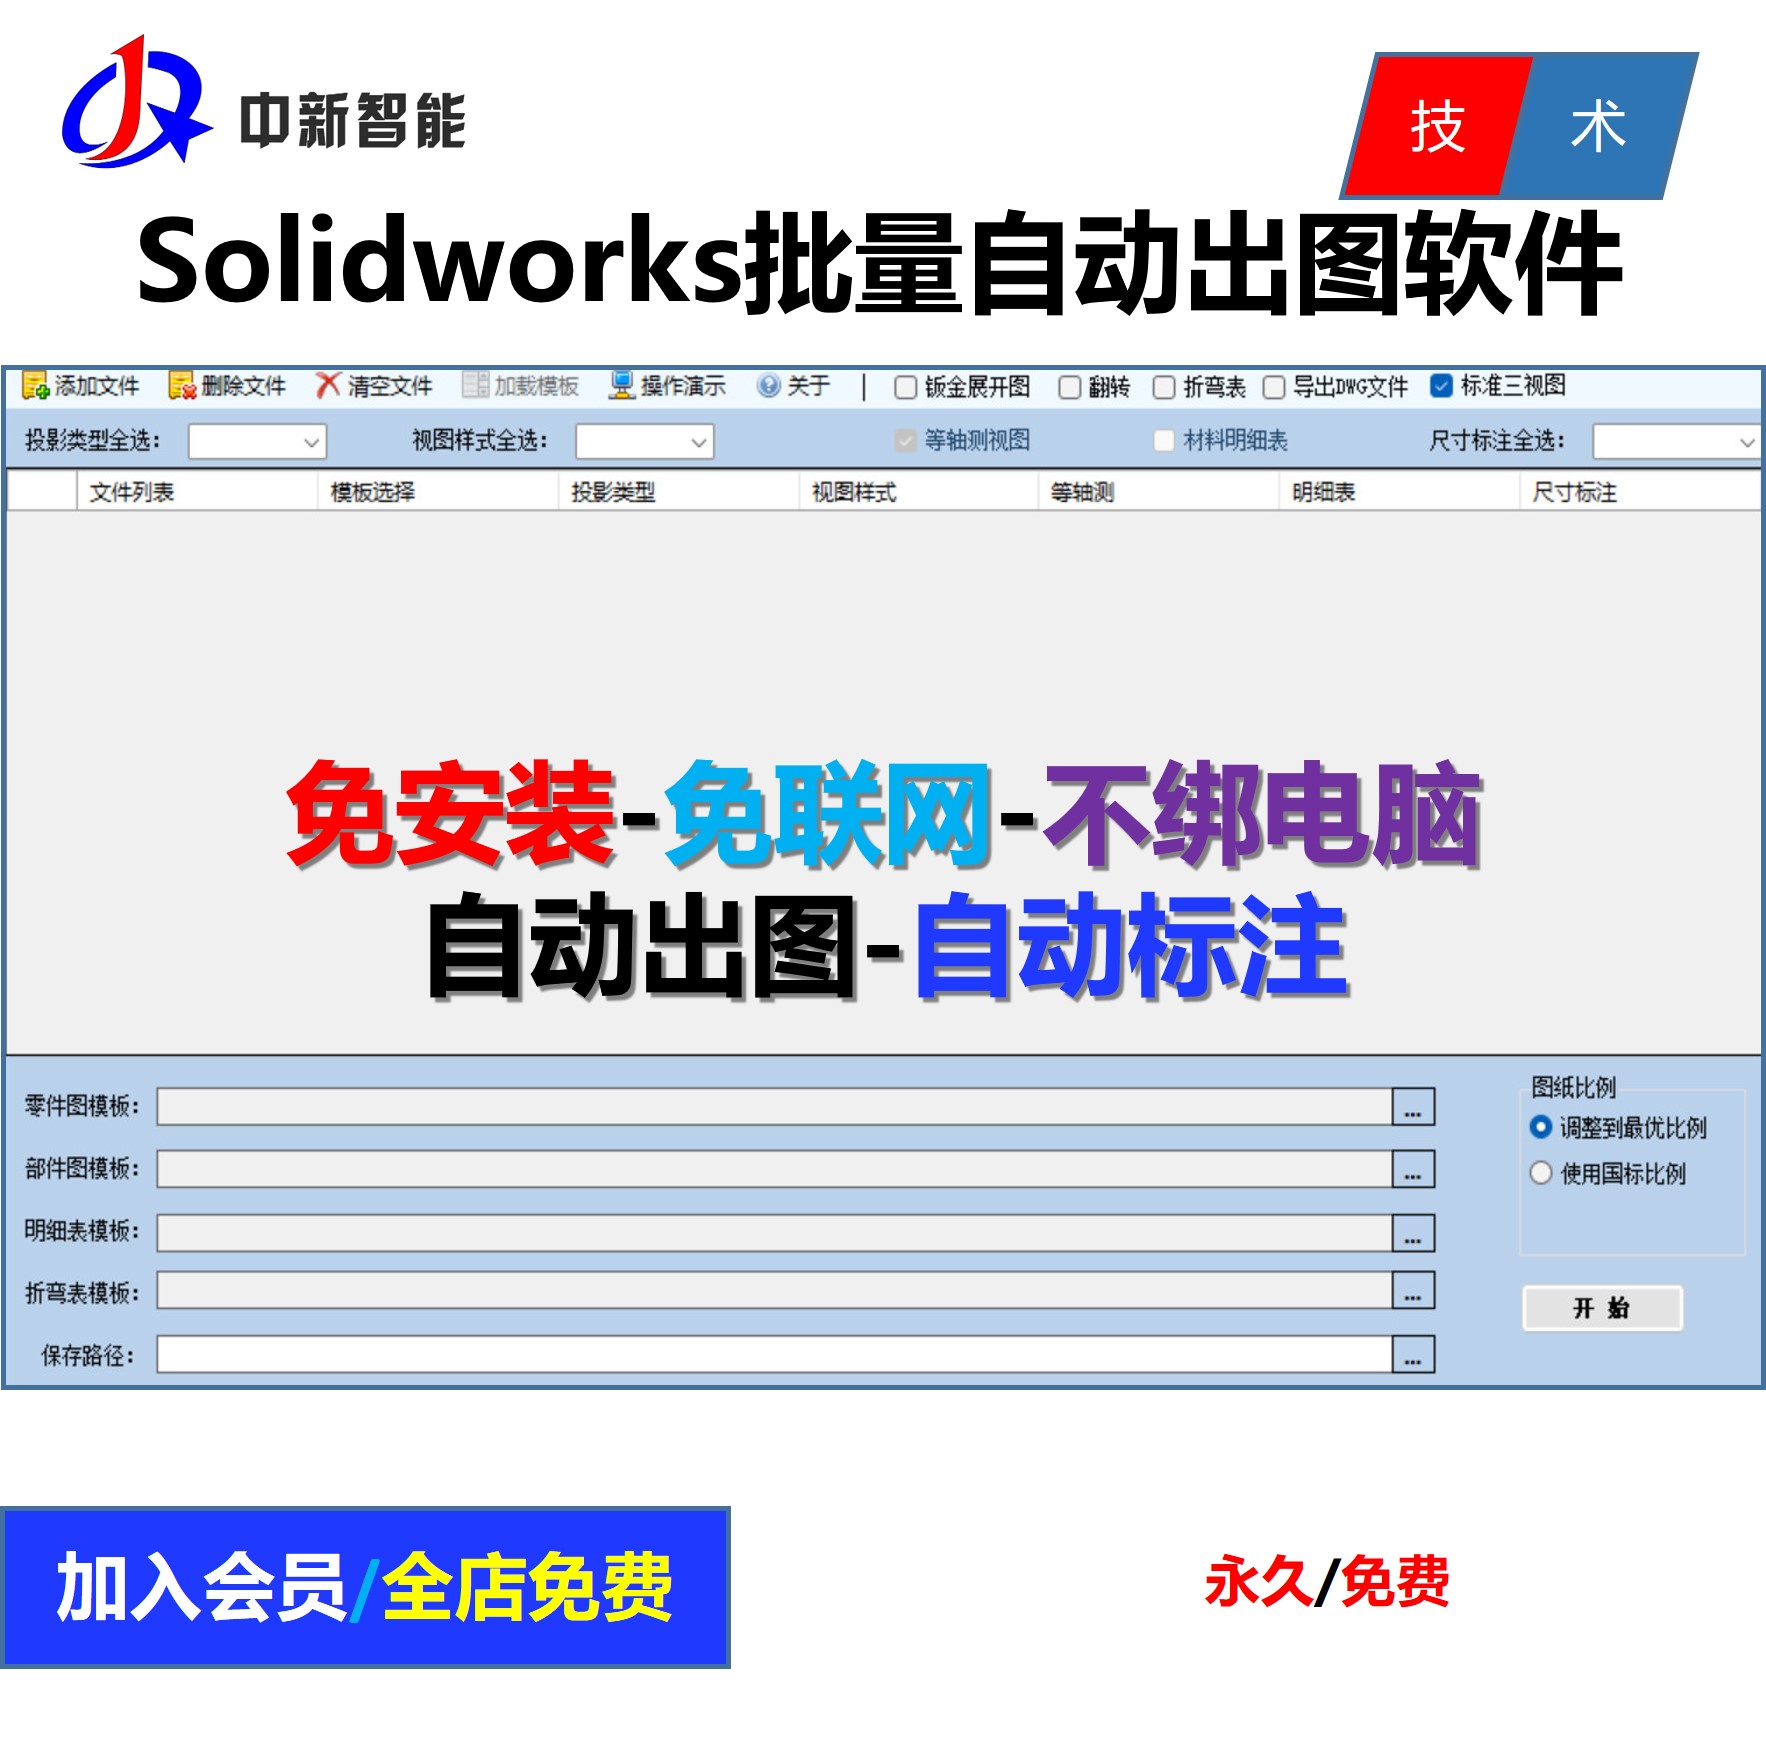 Solidworks批量自动出工程图自动标注尺寸软件SW自动出图标注软件